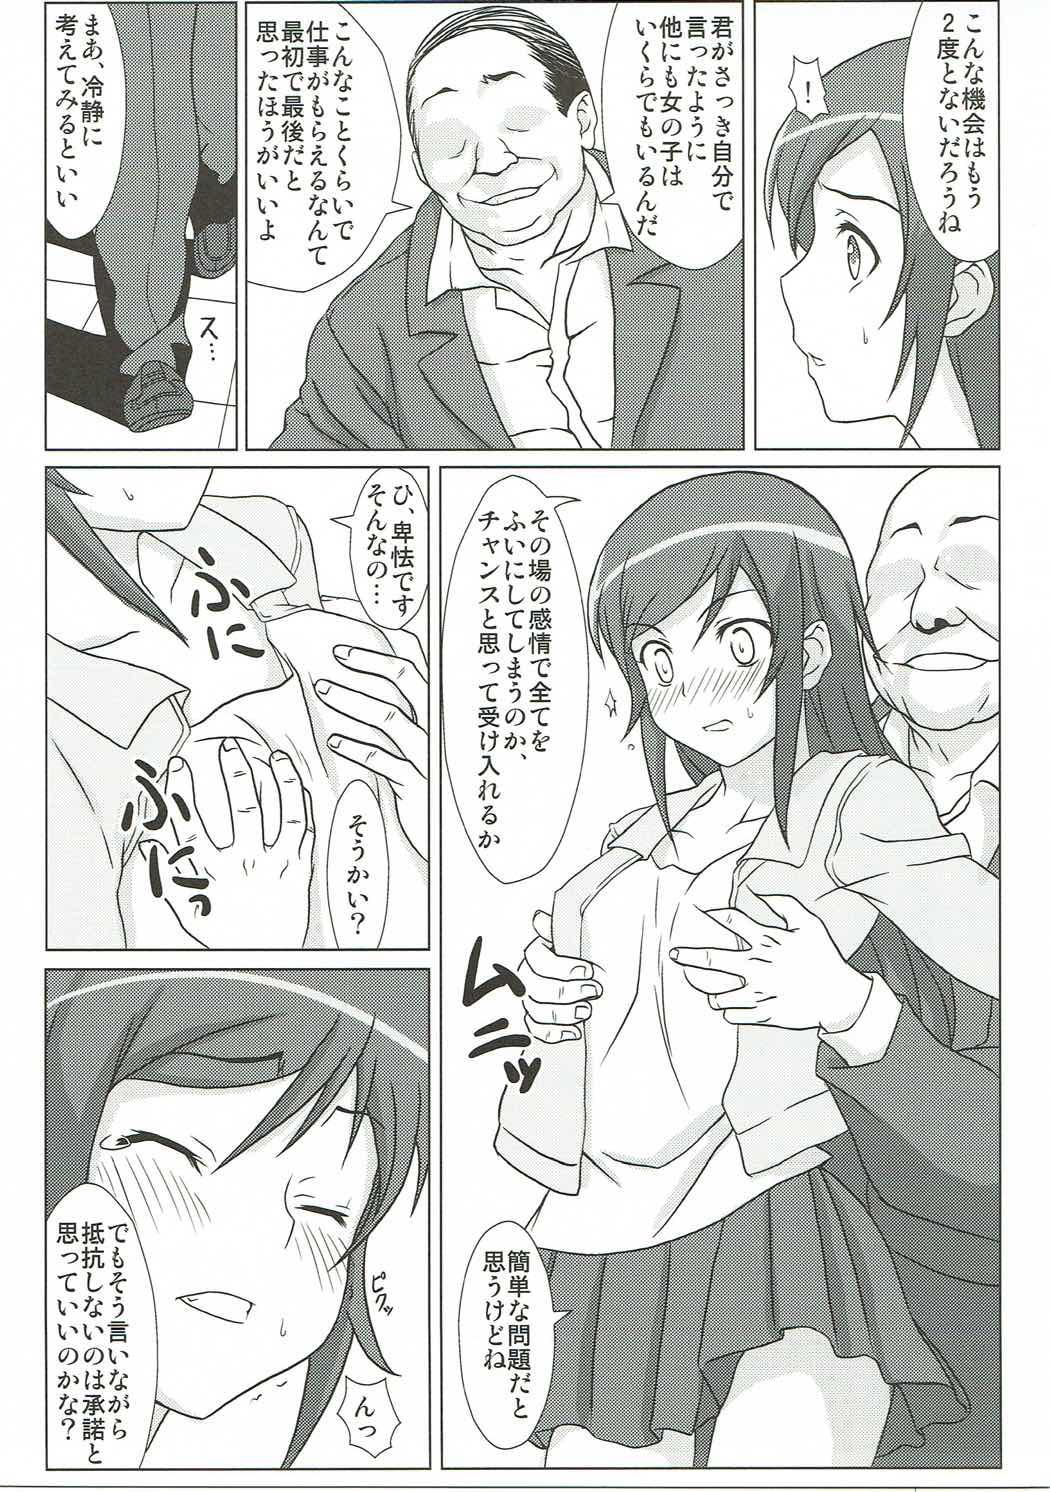 Anime Ore no Imouto no Shinyuu ga Konna ni Kantan ni Ochiteshimau Wake ga Nai - Ore no imouto ga konna ni kawaii wake ga nai Step - Page 6